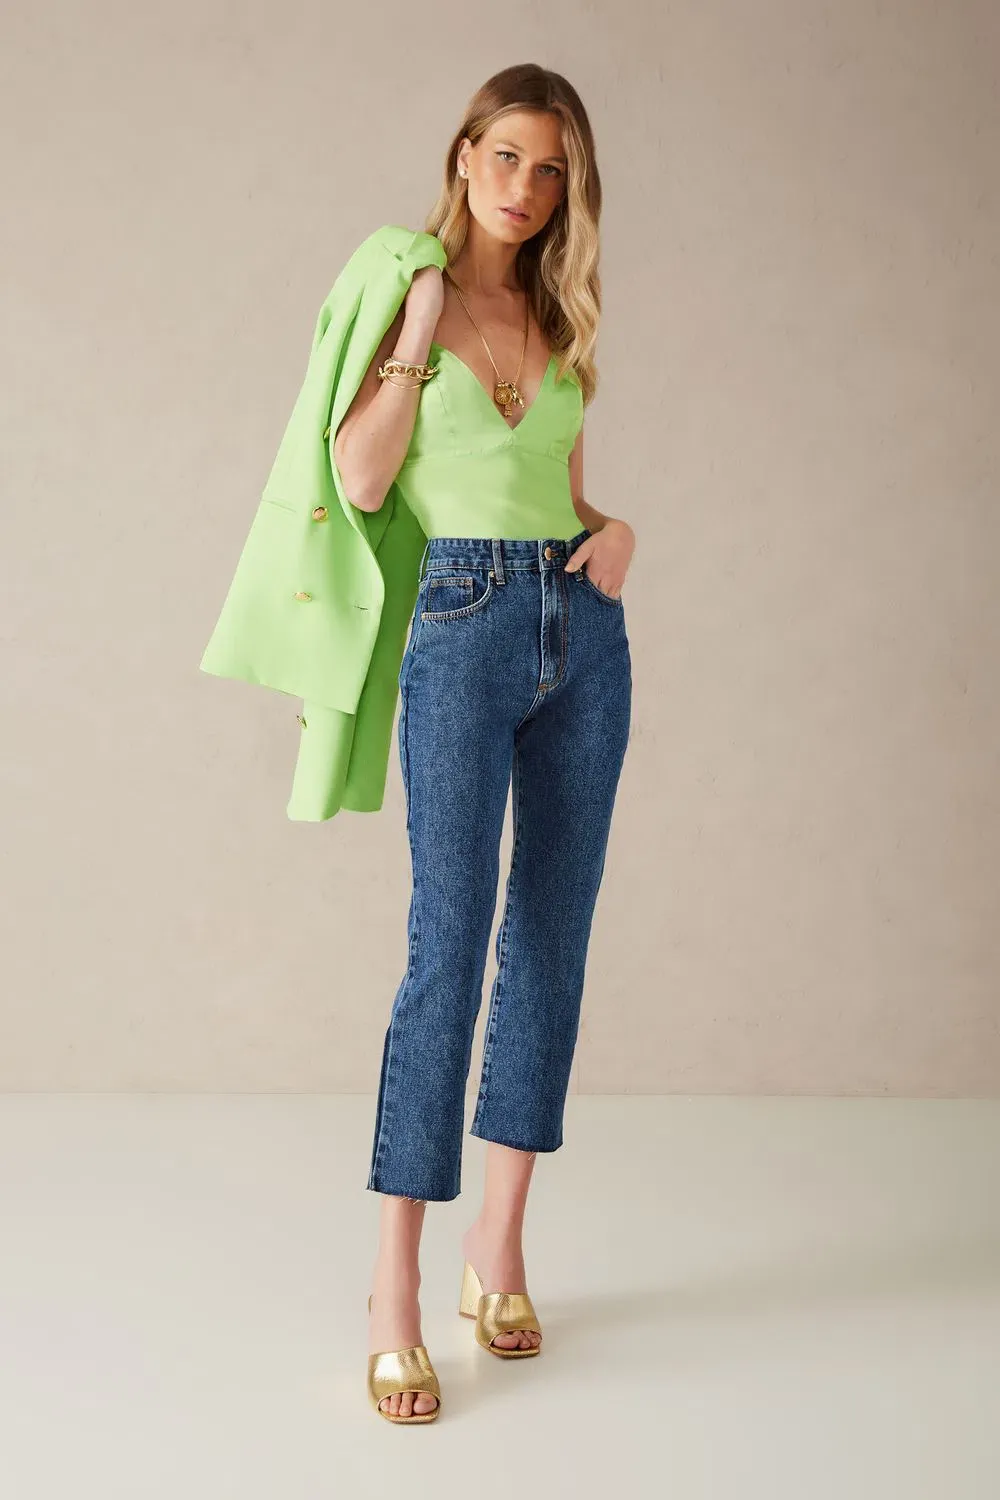 modelo vestido look para o trabalho com jeans e alfaiataria